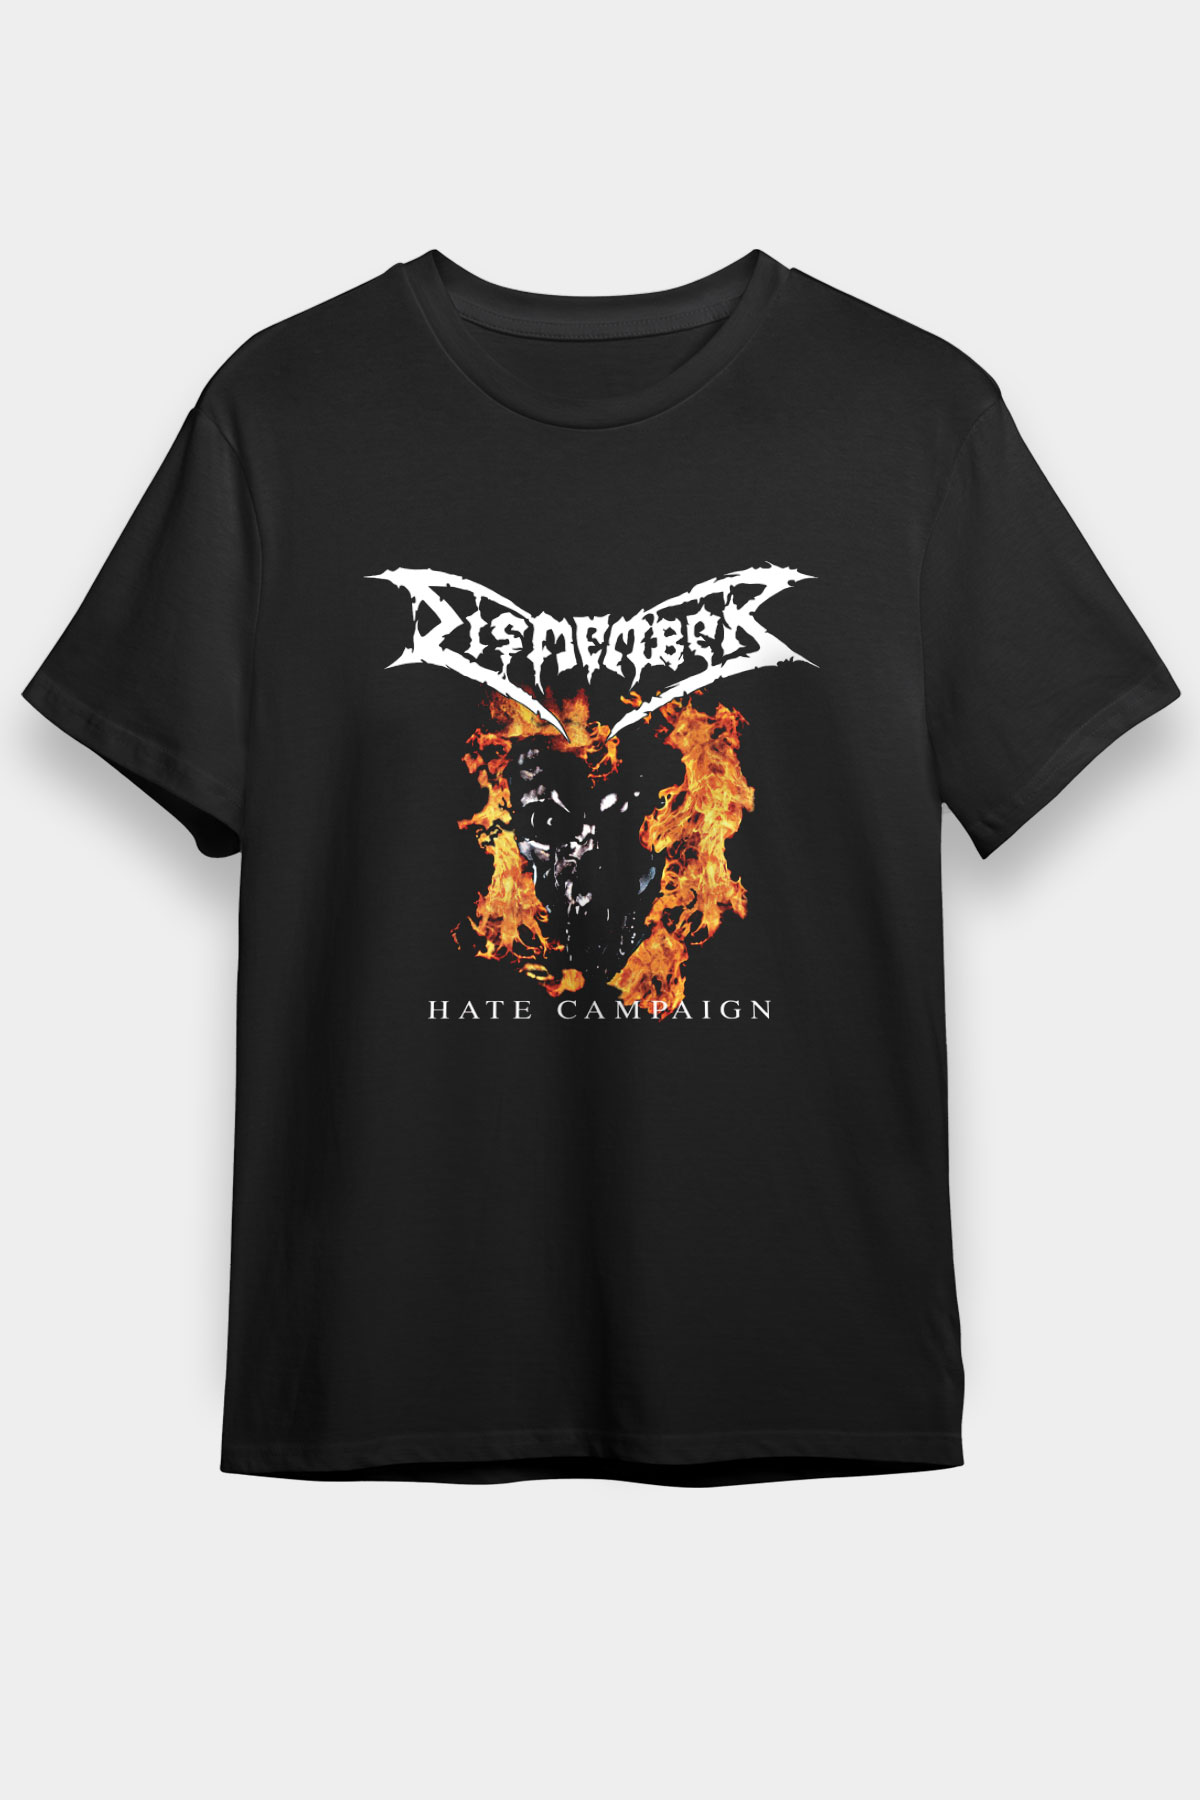 Dismember T shirt, Music Band ,Unisex Tshirt 03